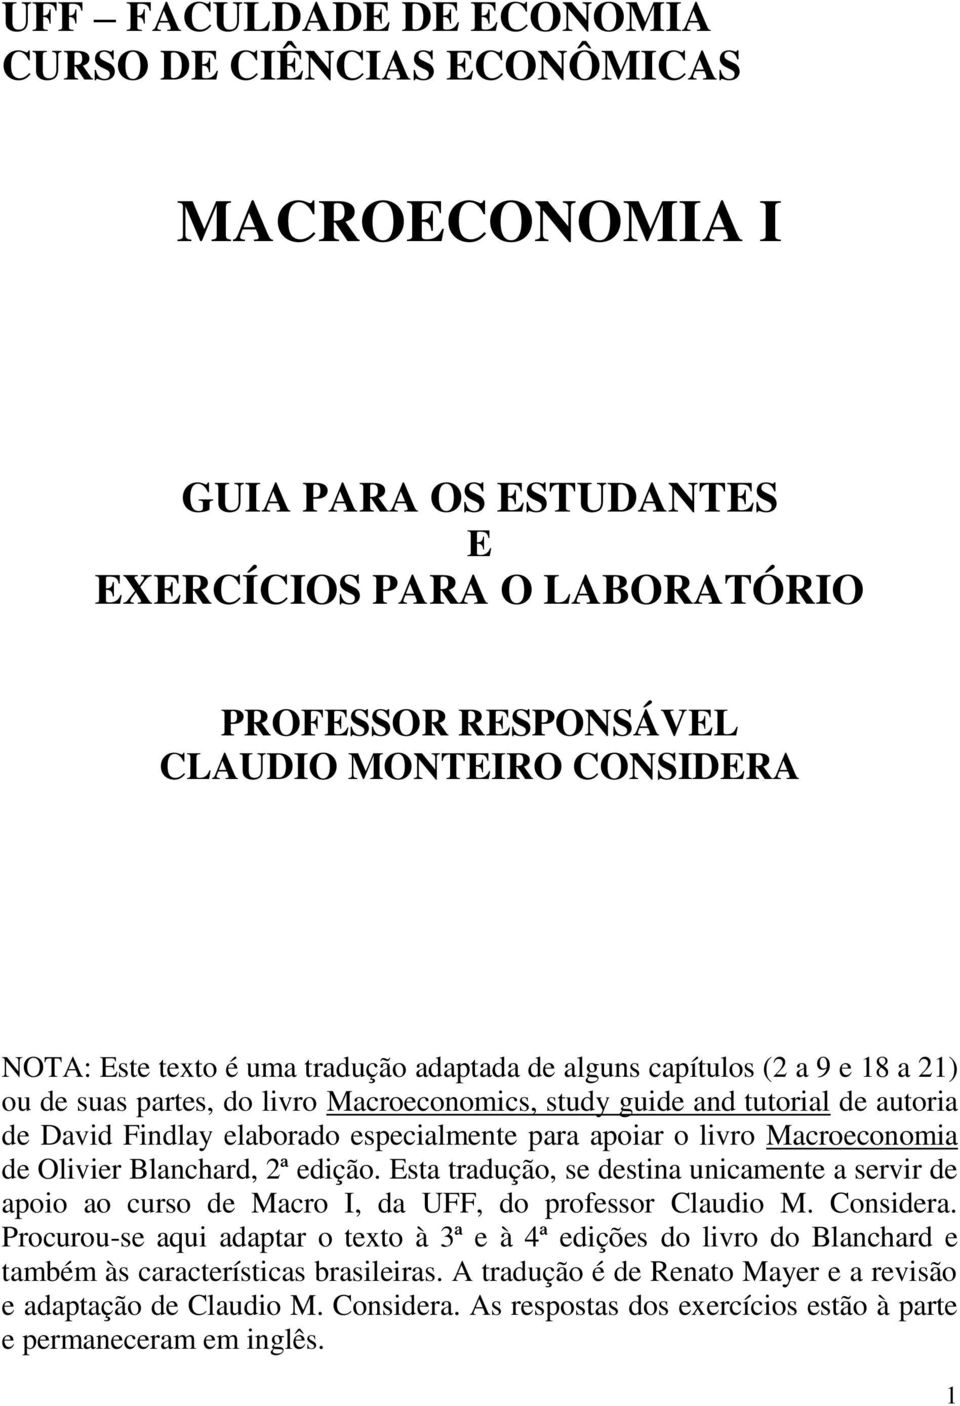 Macroeconomia de Olivier Blanchard, 2ª edição. Esta tradução, se destina unicamente a servir de apoio ao curso de Macro I, da UFF, do professor Claudio M. Considera.